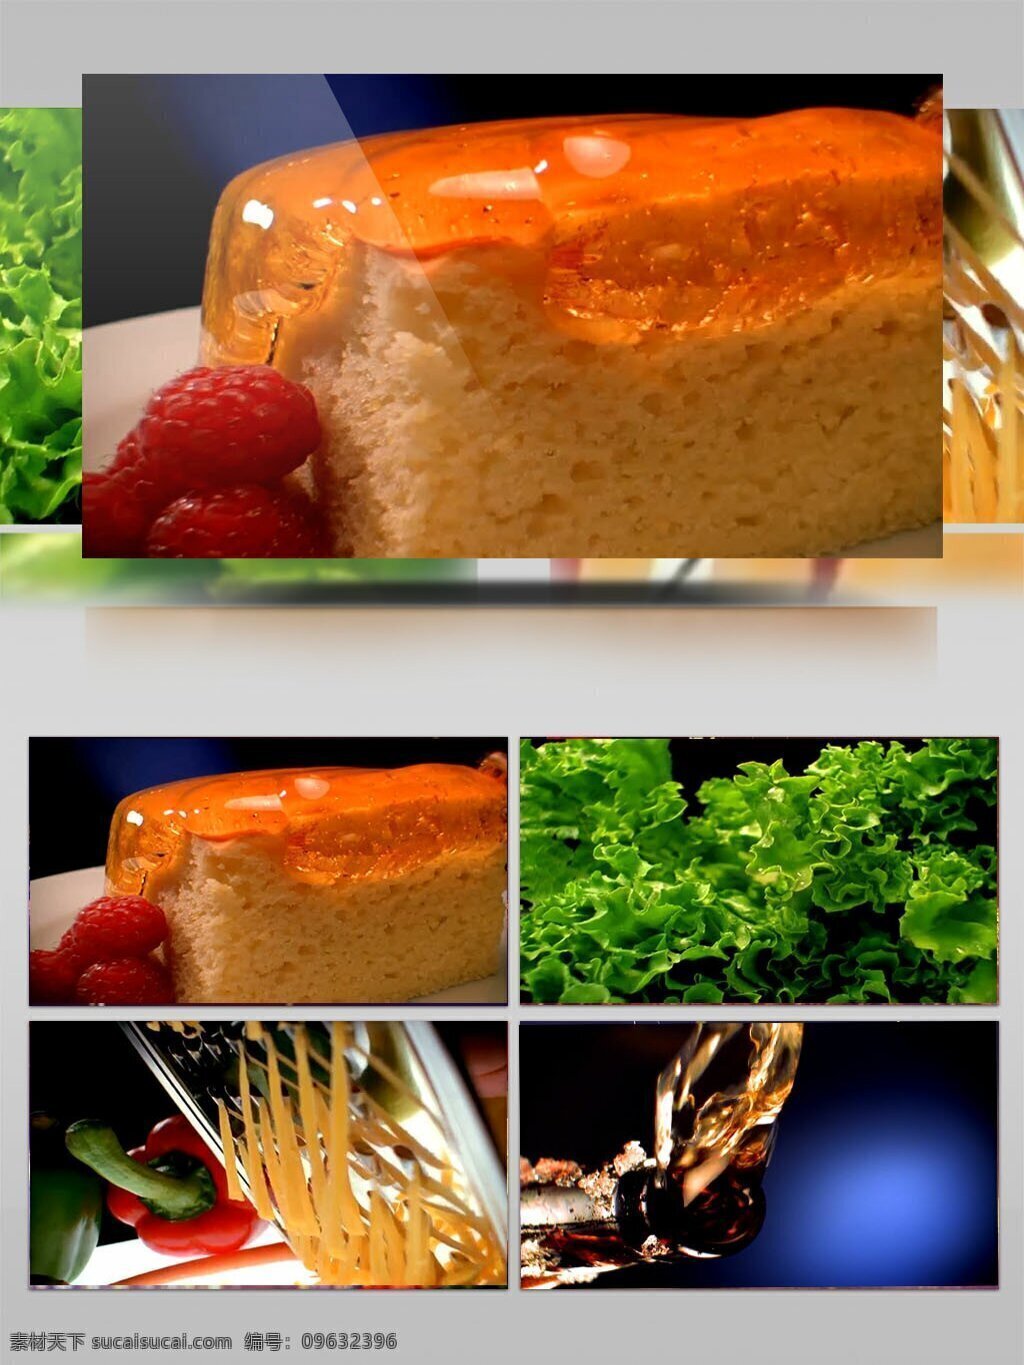 各种 美食 制作 视频 面包 水果 蔬菜 美食制作方法 草莓